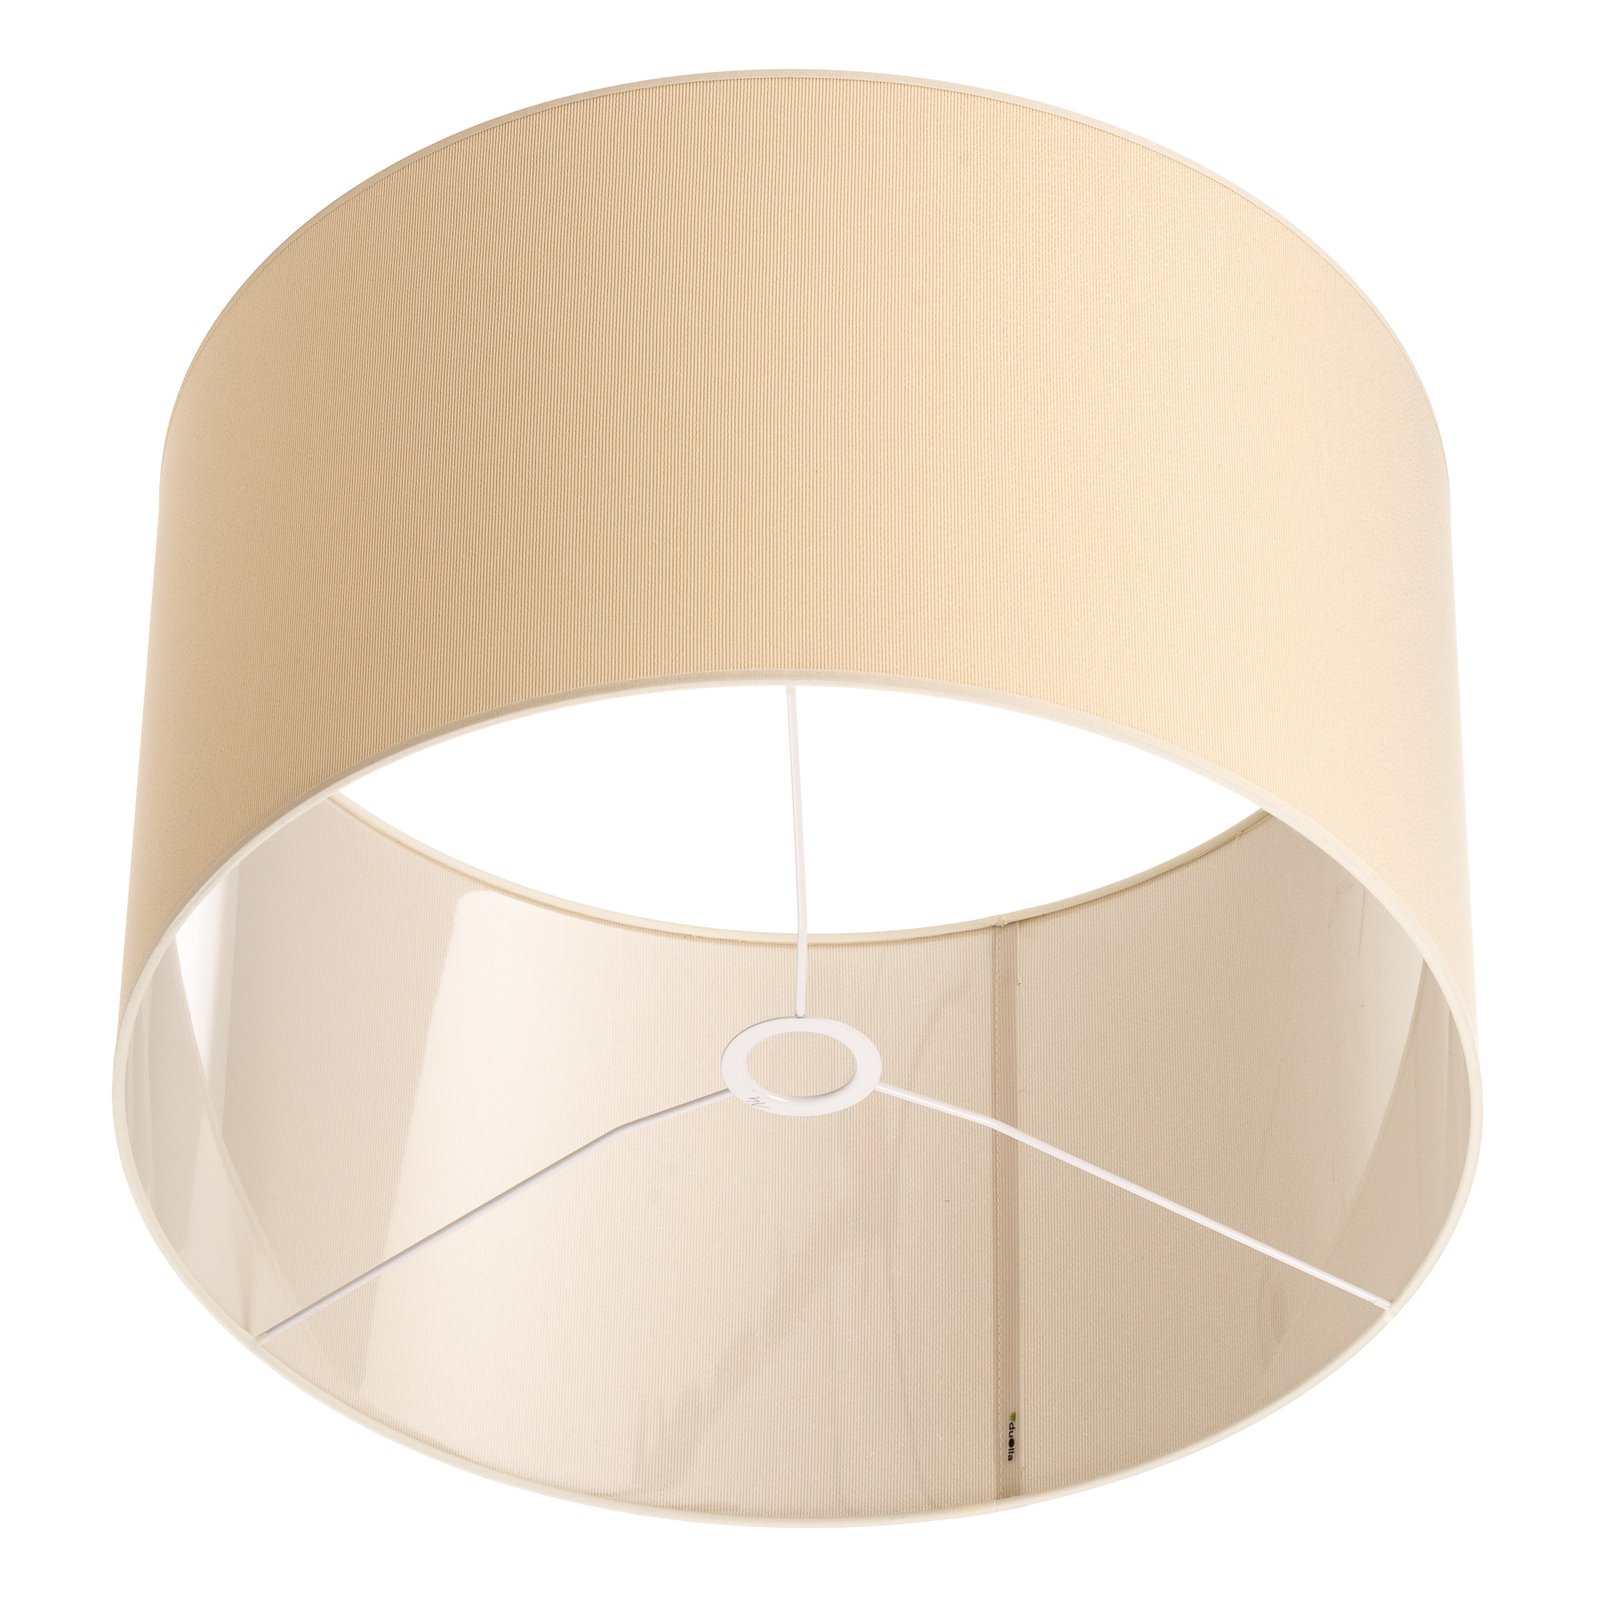 Lampenschirm Roller Ø 50 cm, ecru/gold